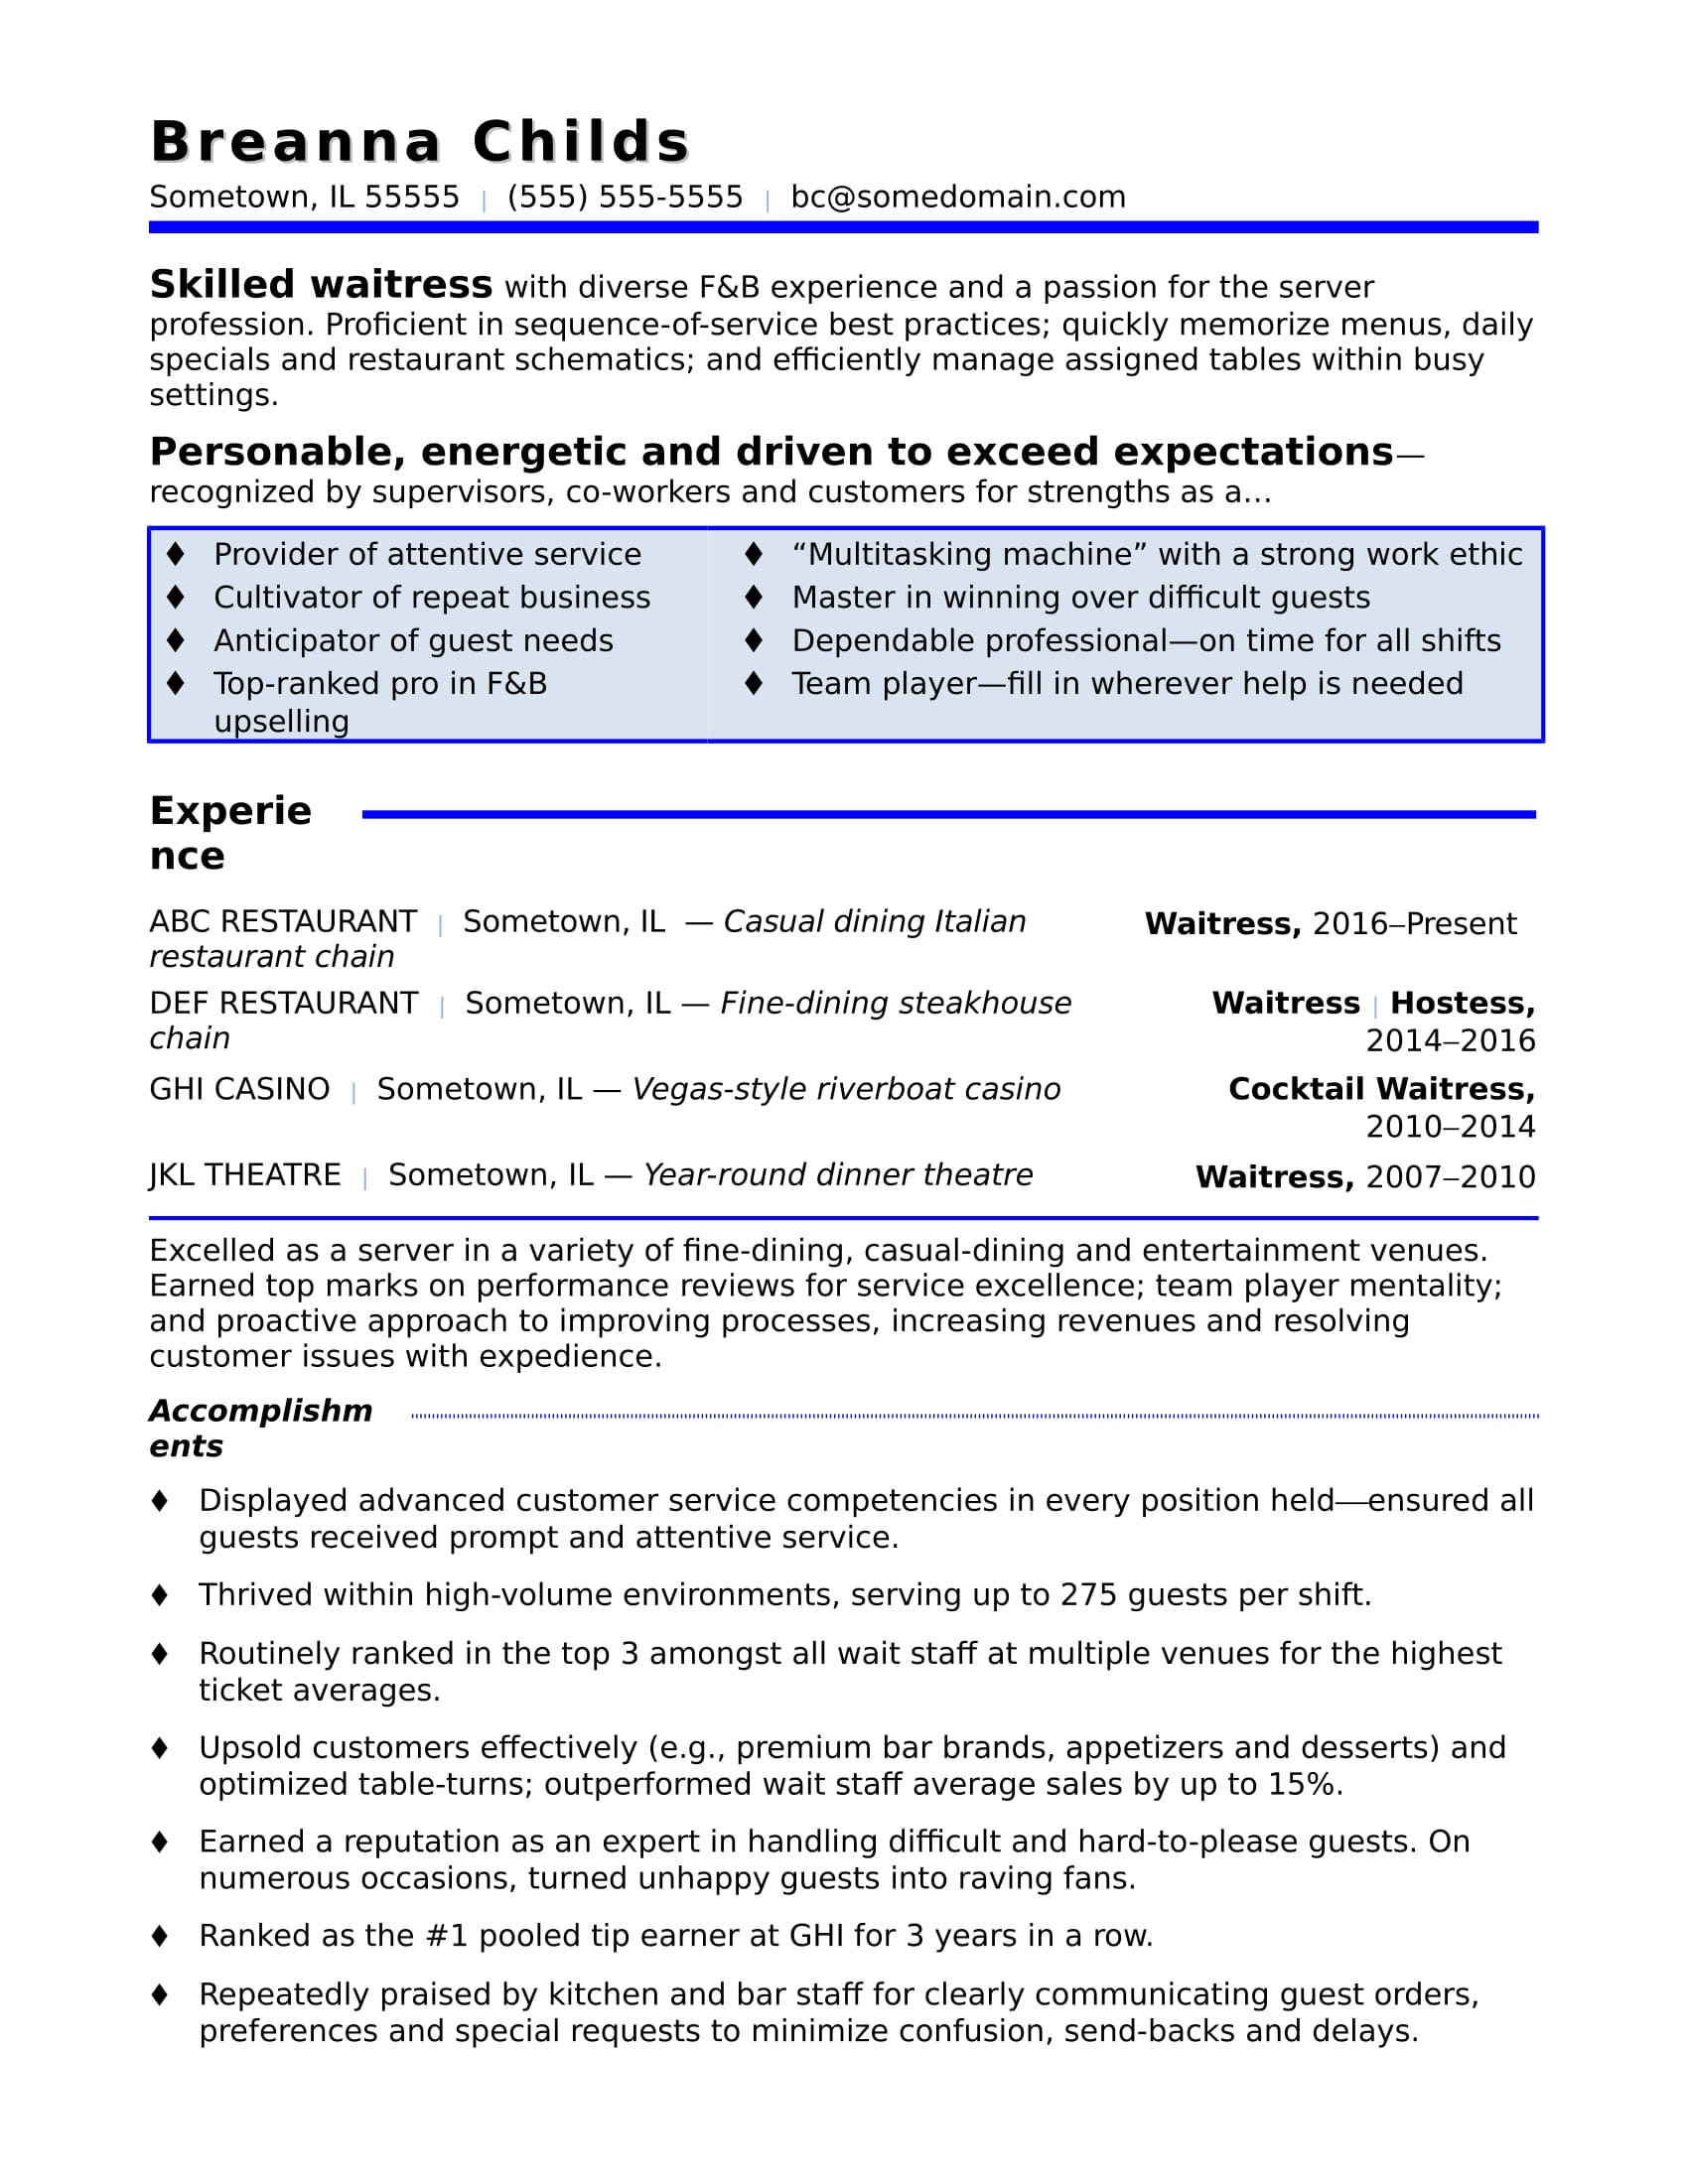 Sample Resume for Waitress or Bartender Waitress Resume Monster.com